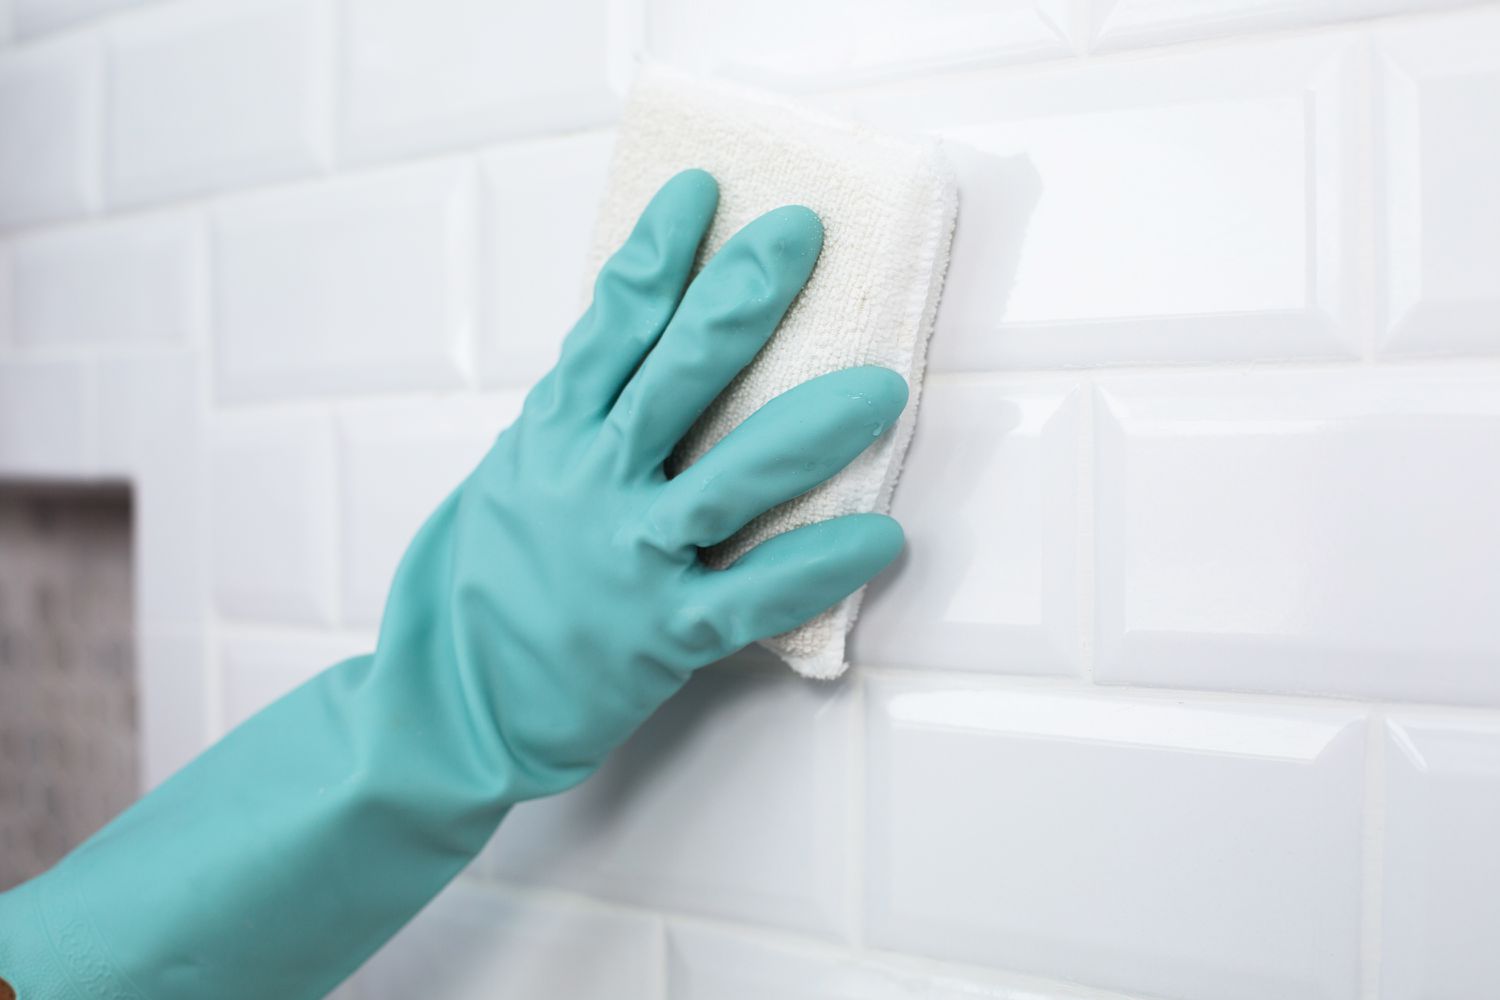 Fugenschleier von weiß gefliester Wand mit weißem Schwamm und blaugrünen Handschuhen gereinigt